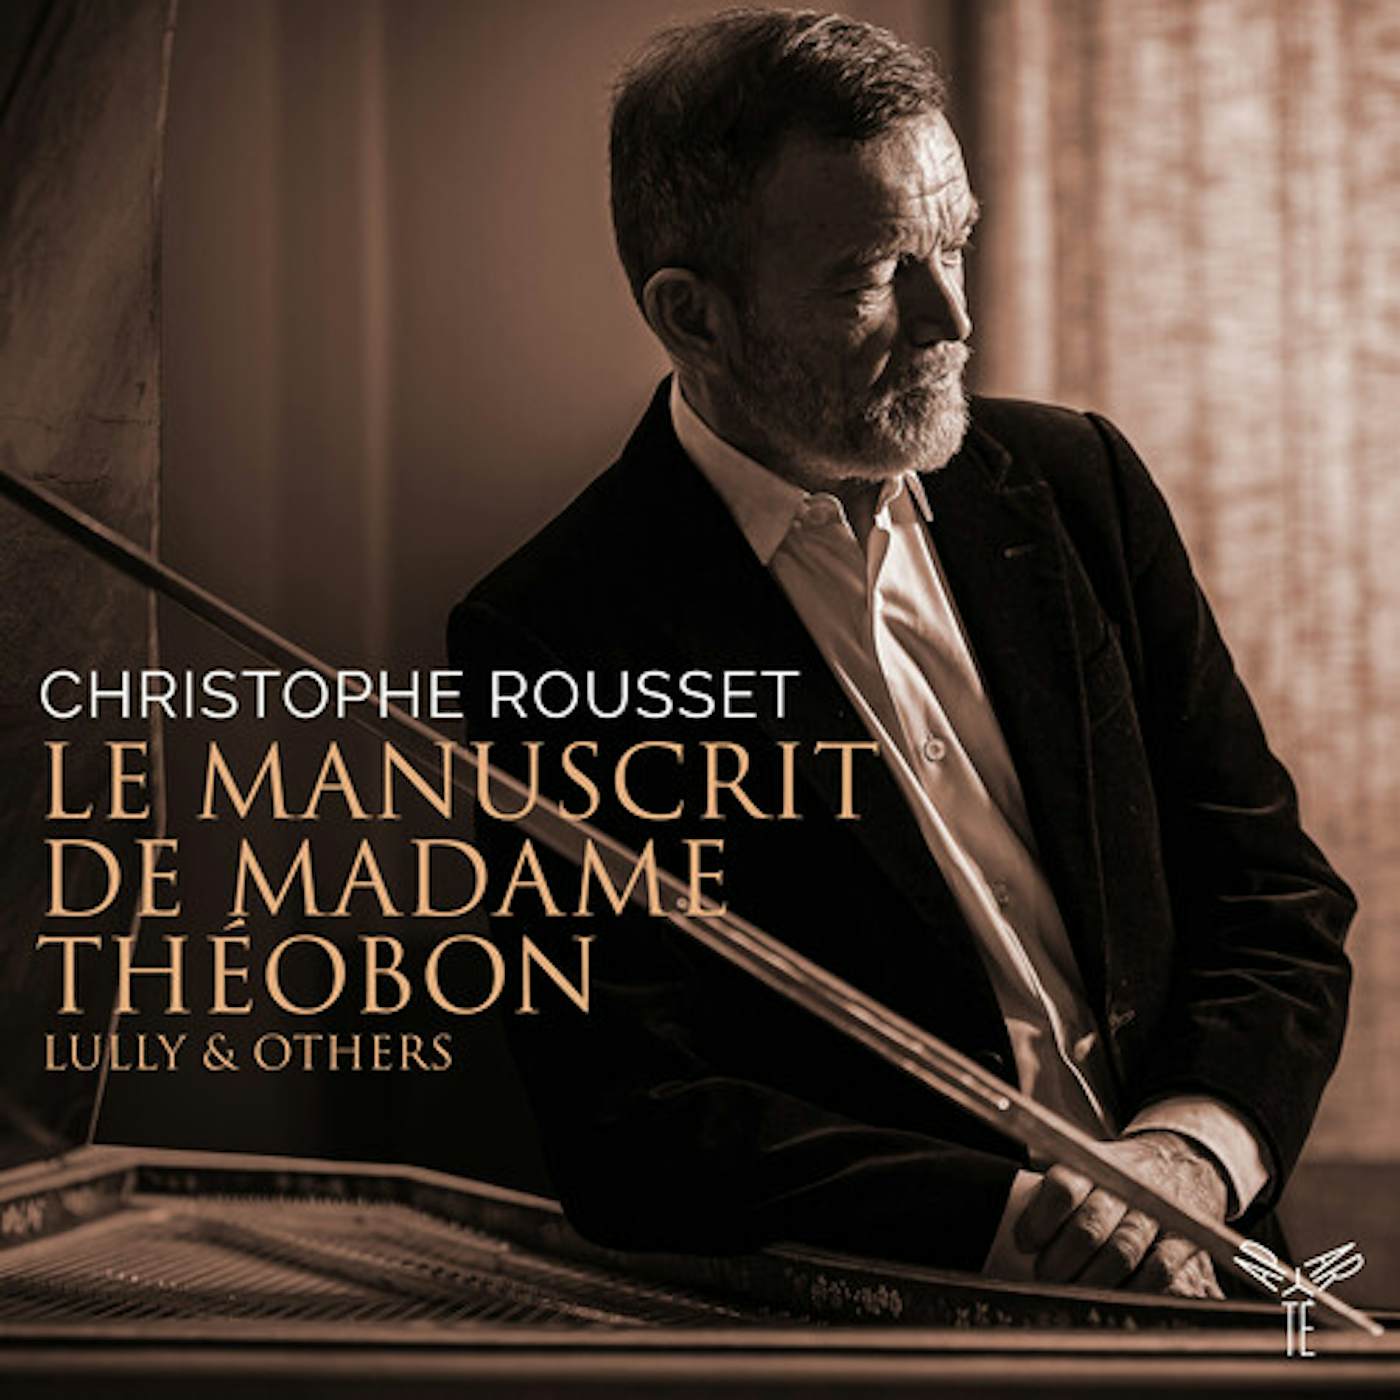 Christophe Rousset LE MANUSCRIT DE MADAME THEOBON CD